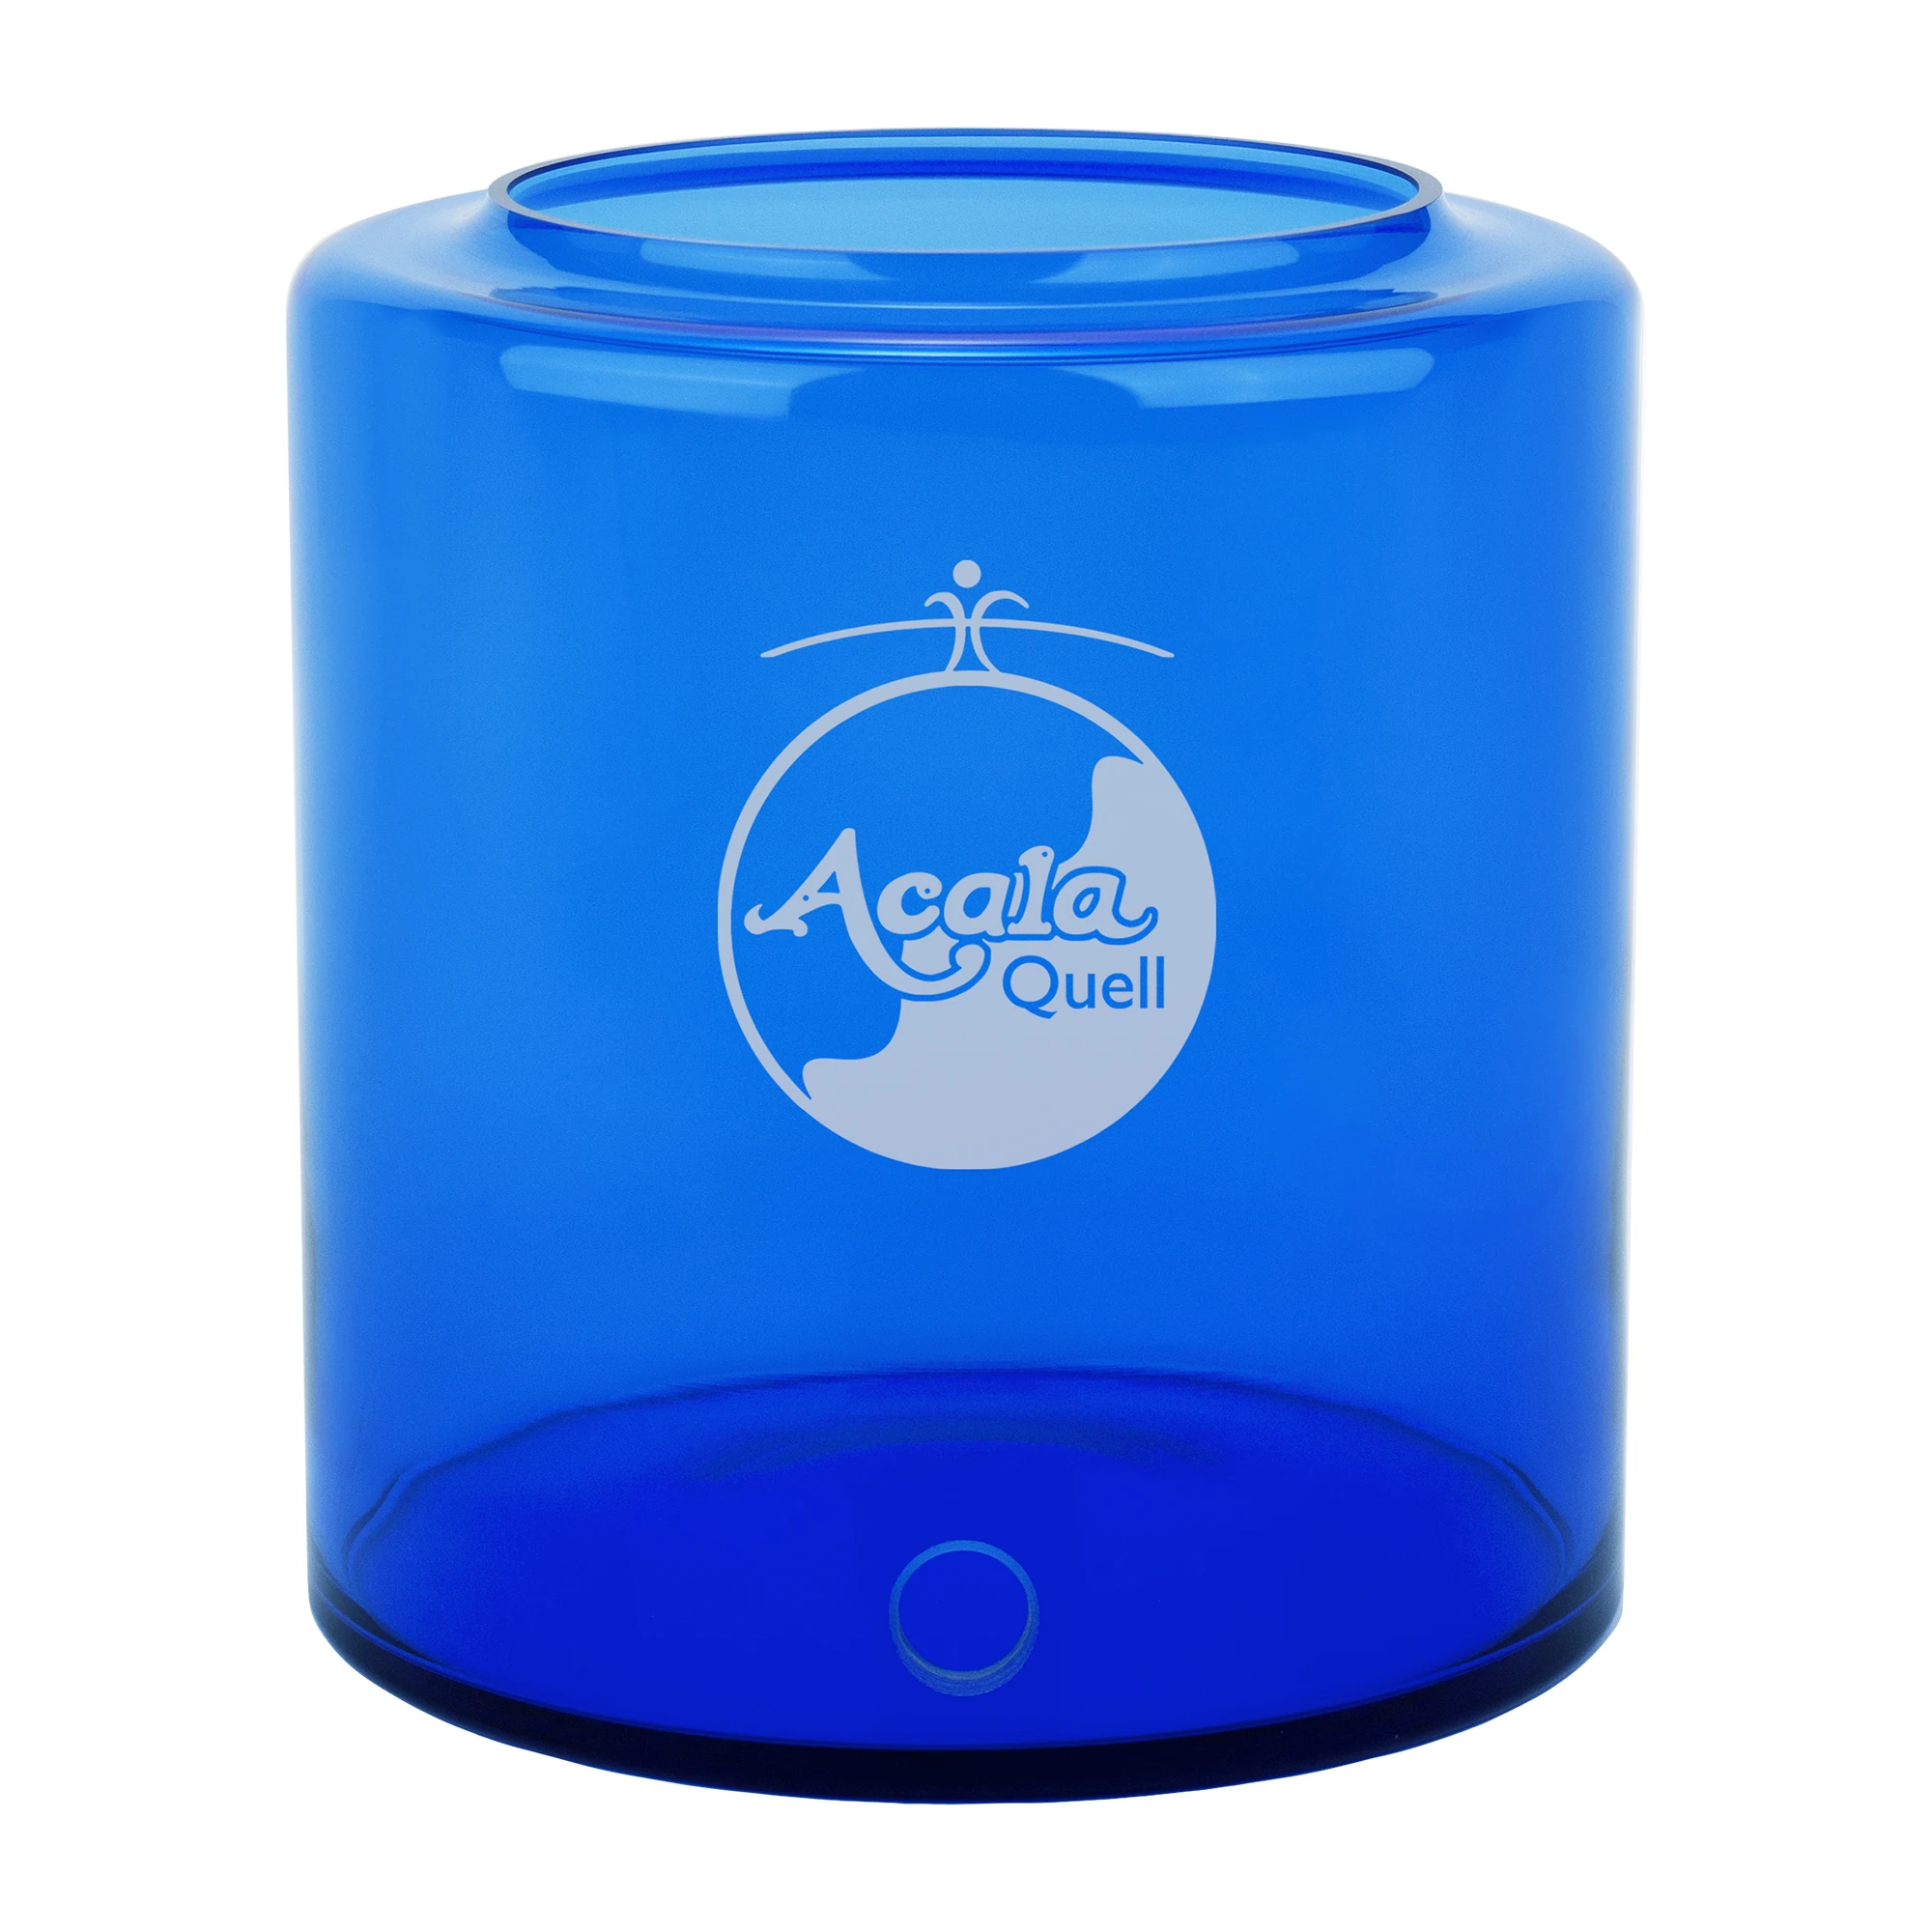 Zu sehen ist ein blauer 5 Liter Glastank mit weißem AcalaQuell Logo vorne drauf vor weißem Hintergrund.